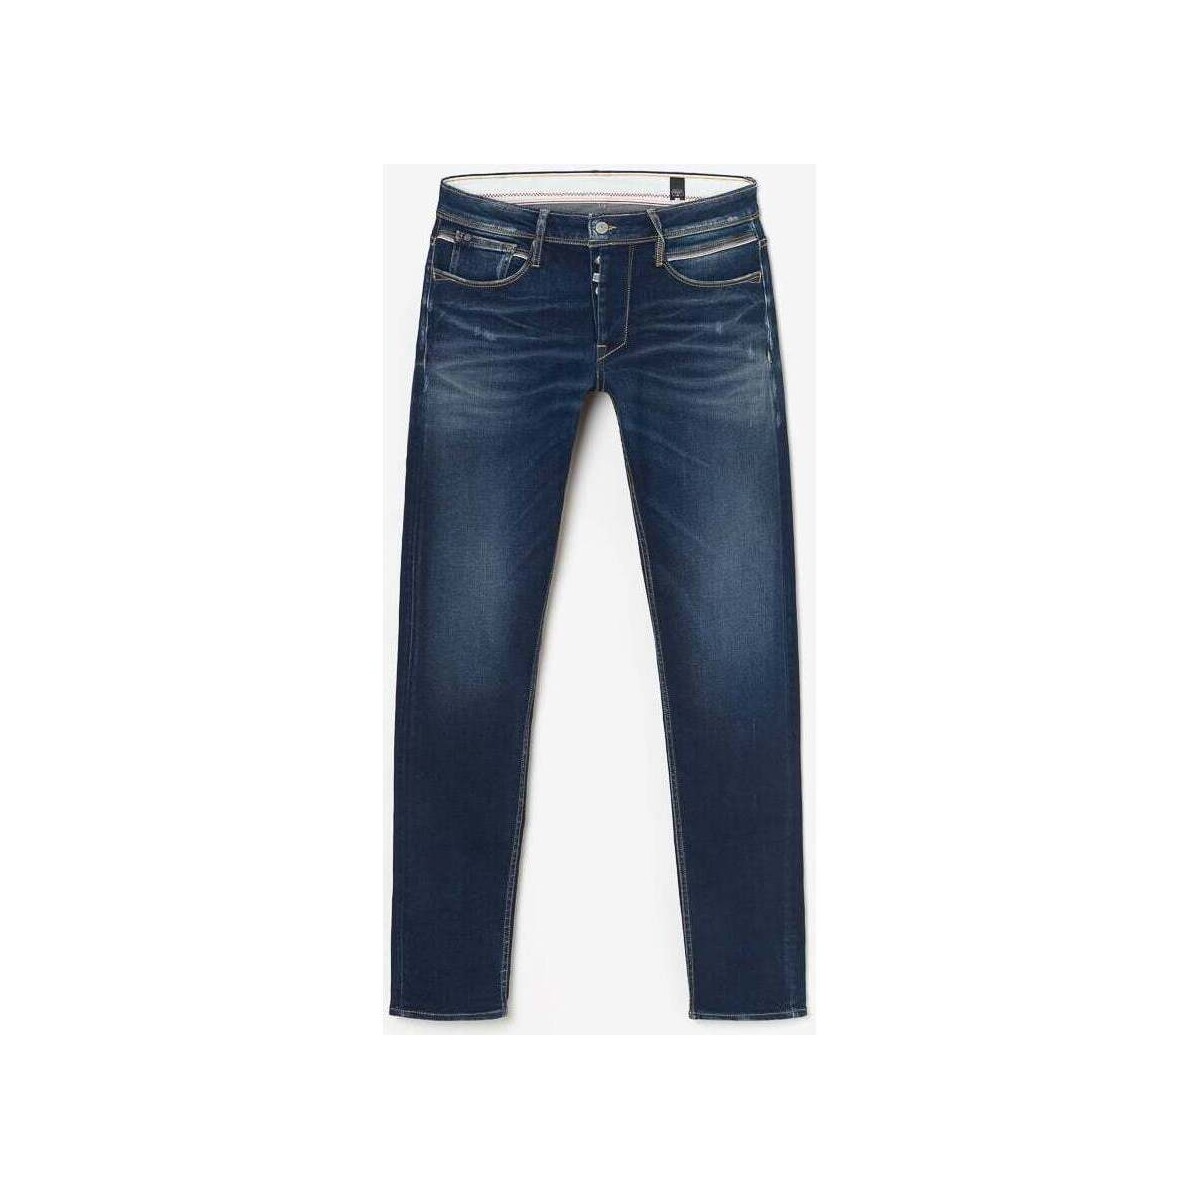 Le Temps des Cerises Bleu Mun 700/11 adjusted jeans des